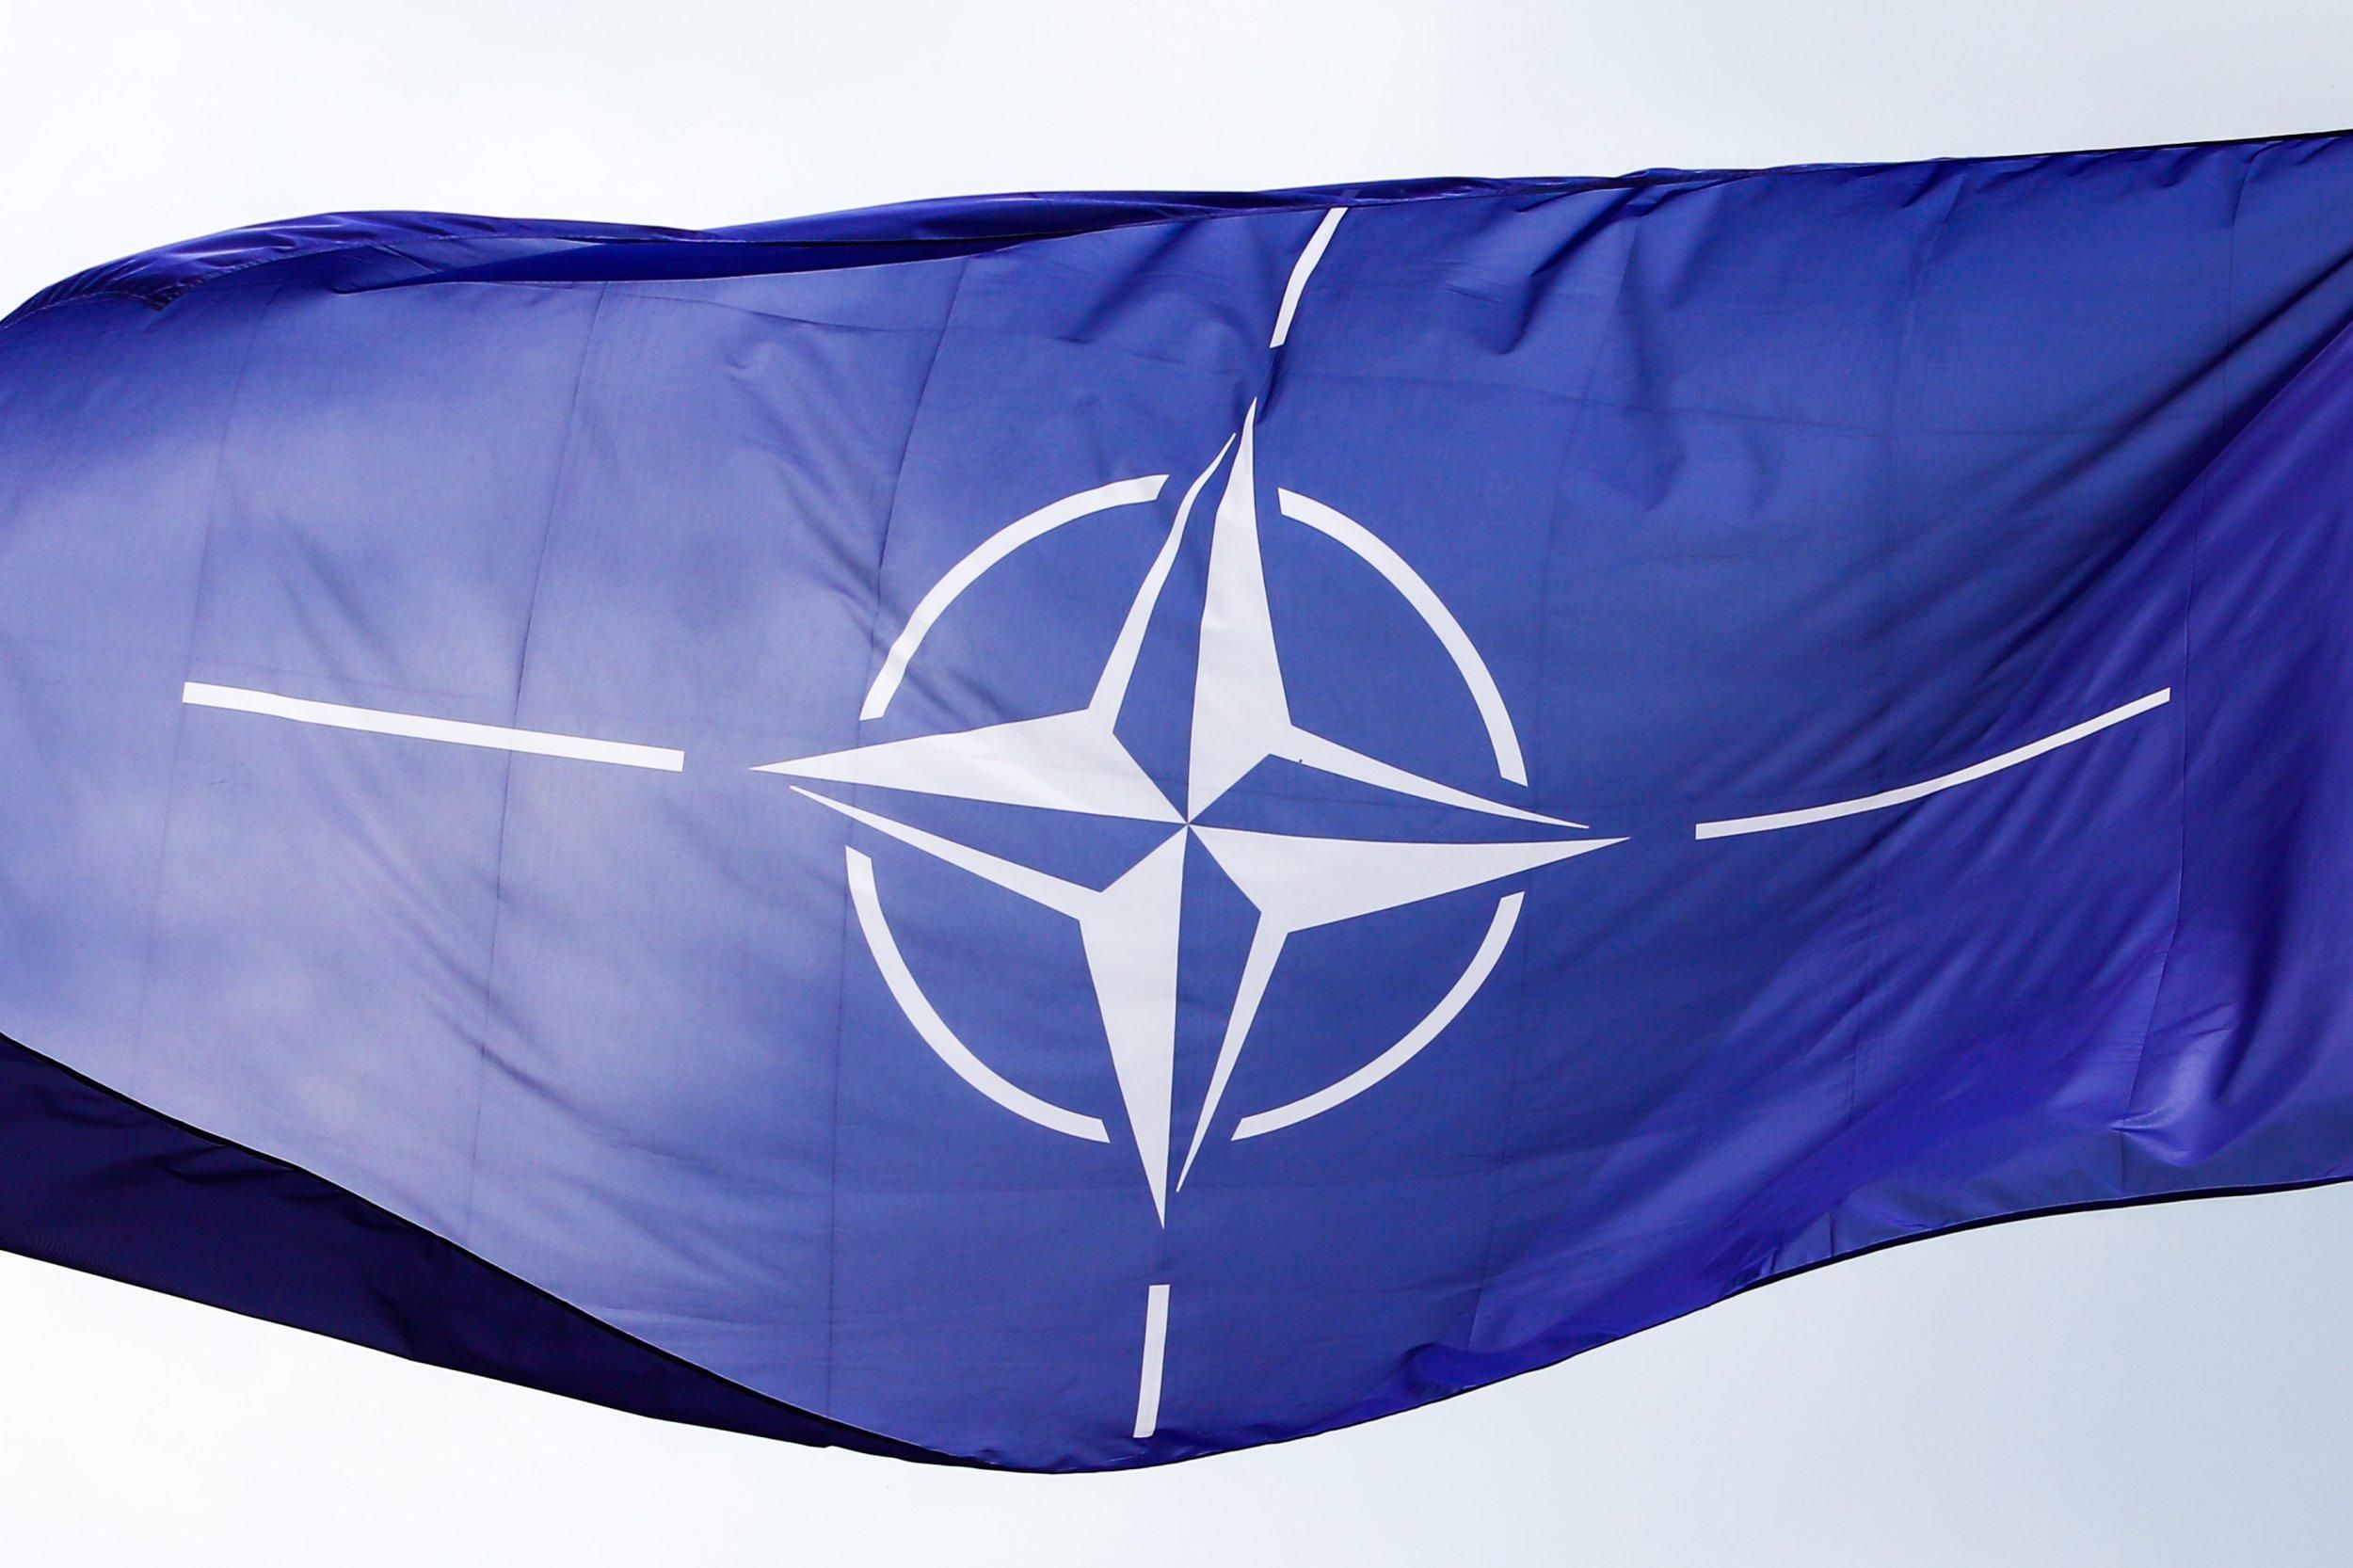 "Мощный сигнал для сдерживания России": в Европе приветствуют намерение Финляндии присоединиться к НАТО